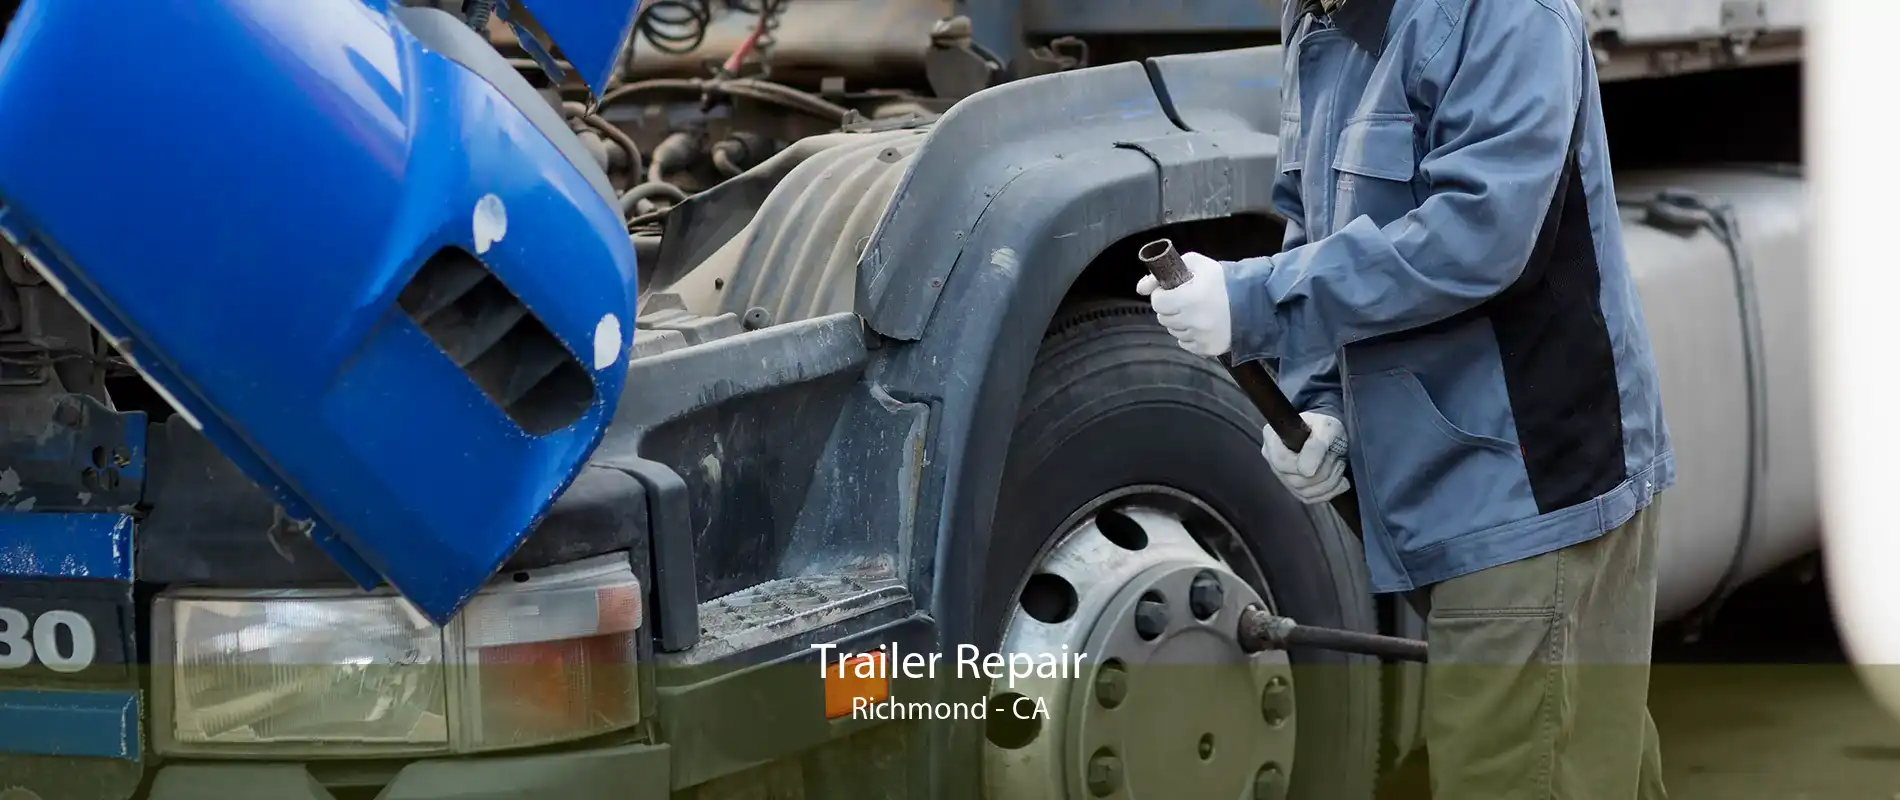 Trailer Repair Richmond - CA